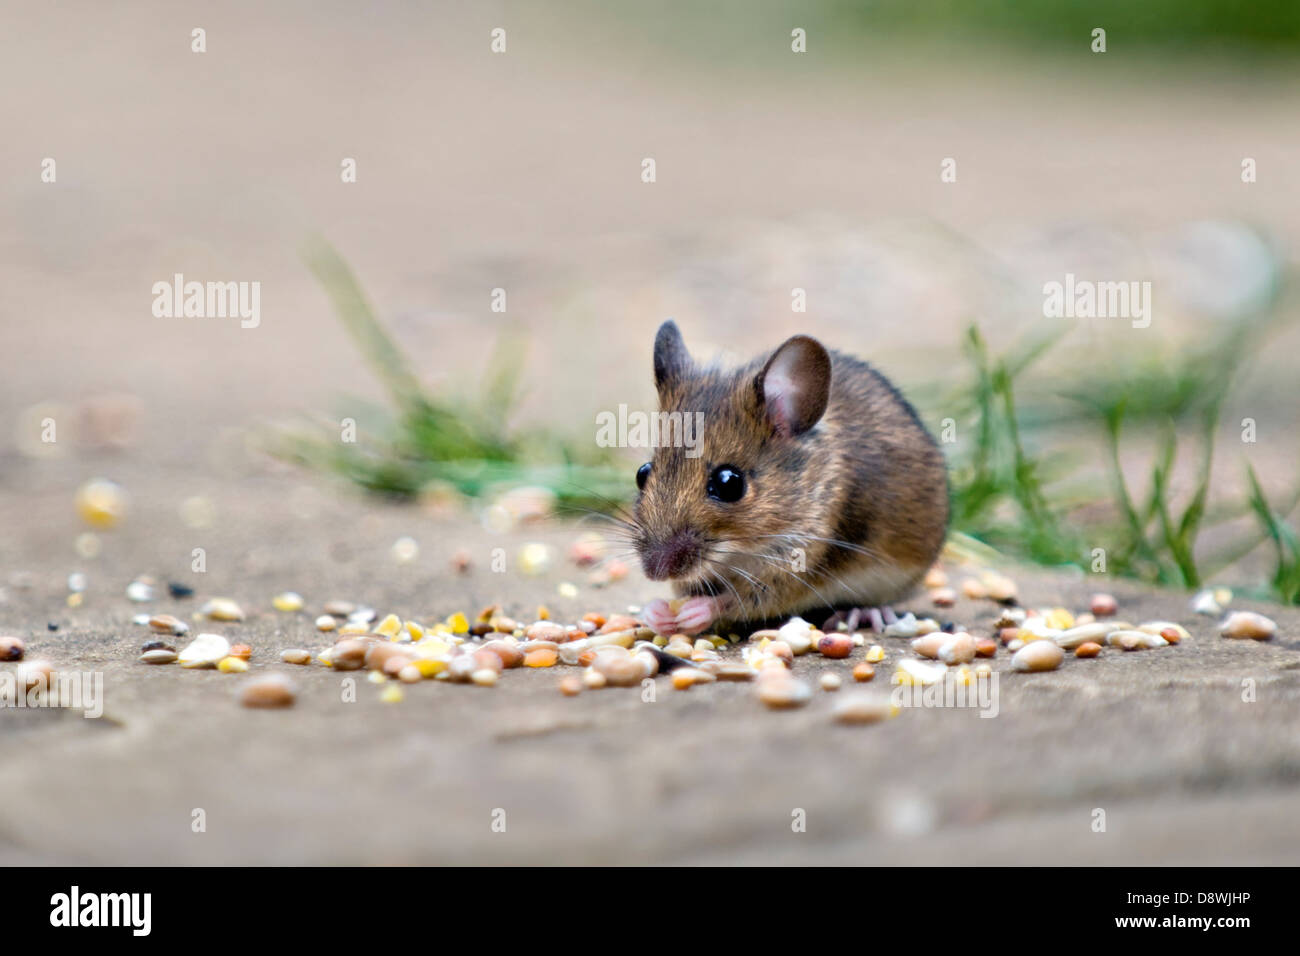 Ratón de madera, conocido también como el campo o long-tailed ratón comiendo las semillas de los pájaros en el patio en el jardín con fondo desenfocado Foto de stock